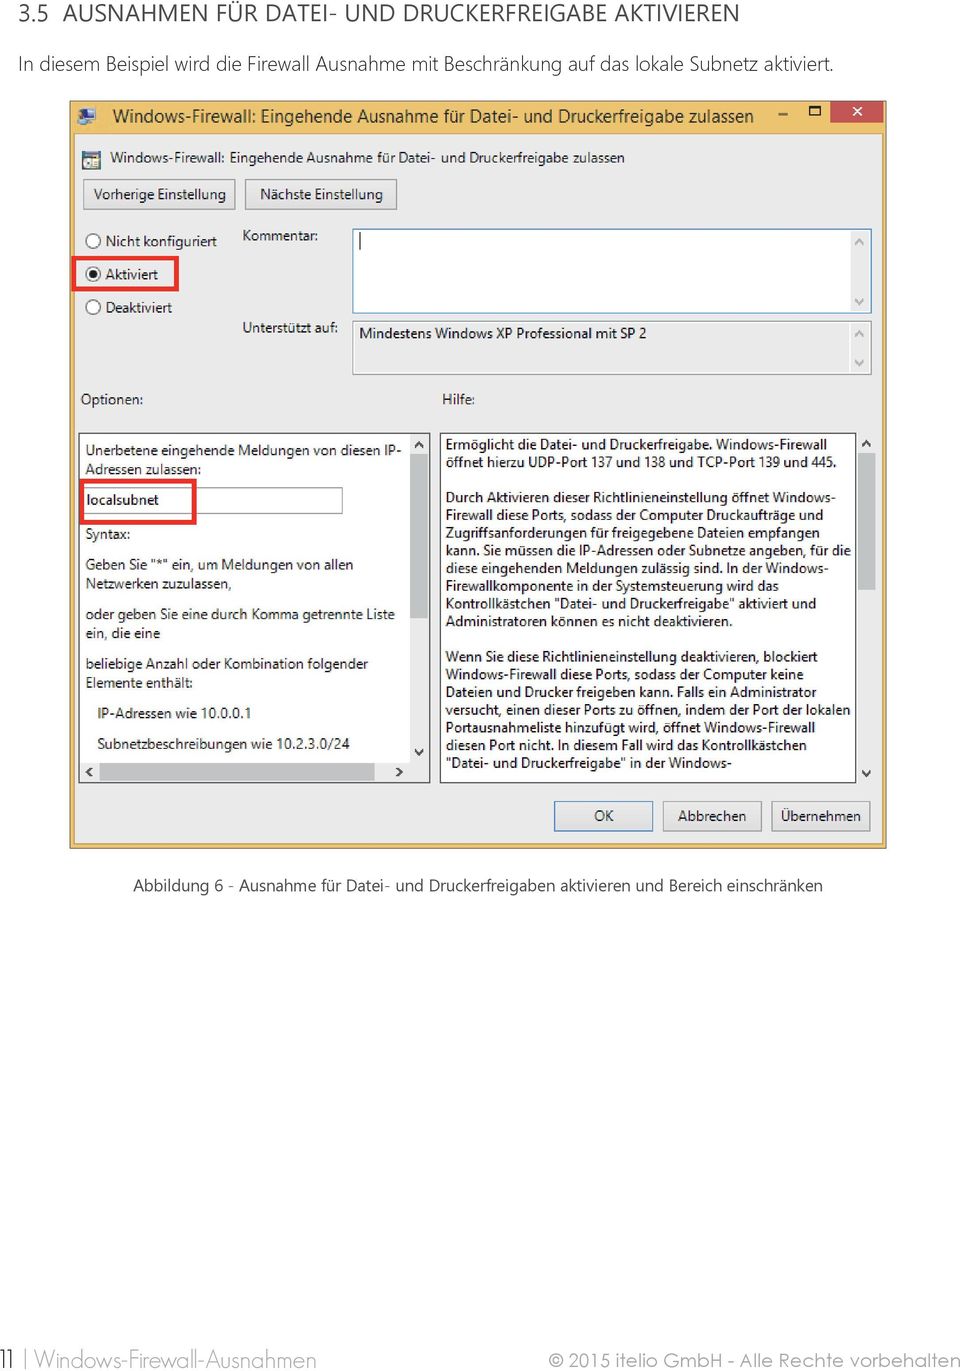 Abbildung 6 - Ausnahme für Datei- und Druckerfreigaben aktivieren und Bereich einschränken Windows